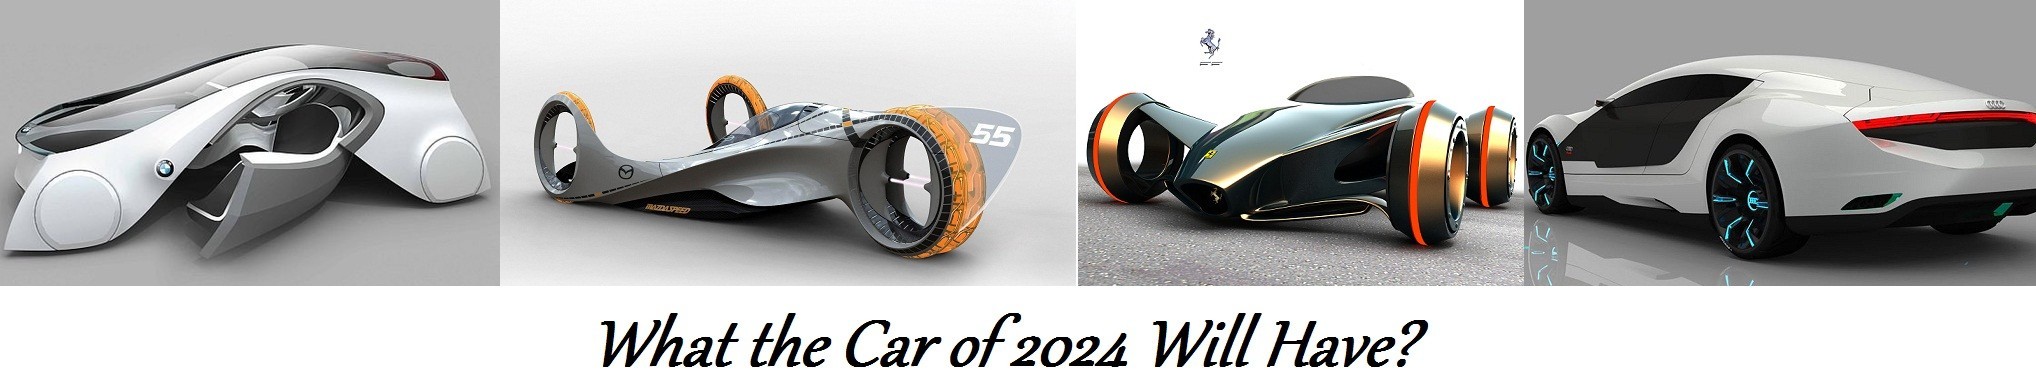 Car 2024 